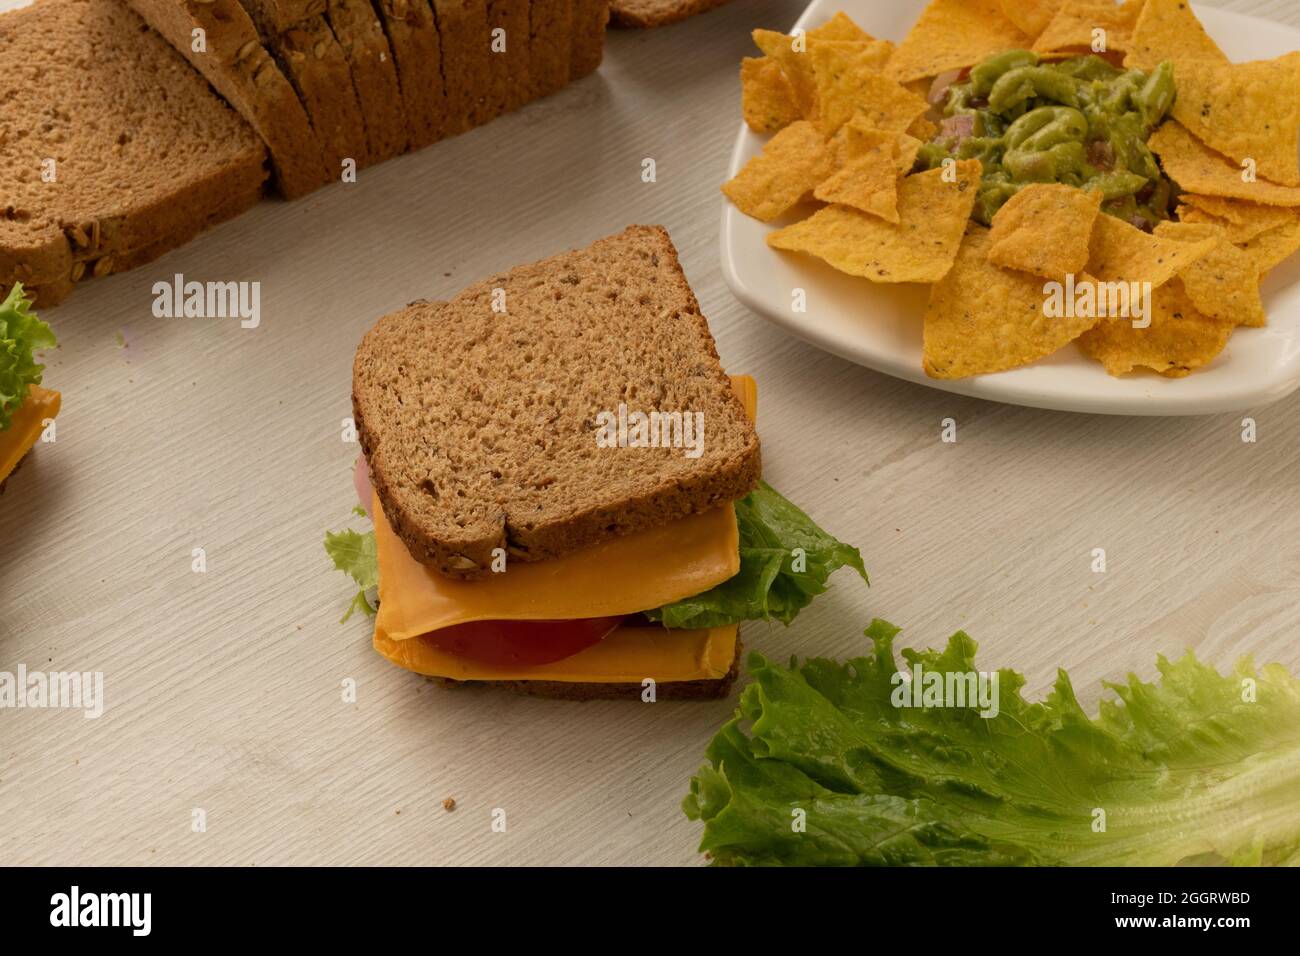 dettagli di sandwich preparati con ingredienti freschi, armati di pane integrale di grano, formaggio, lattuga e un piatto con nachos su un tavolo, delizioso Foto Stock